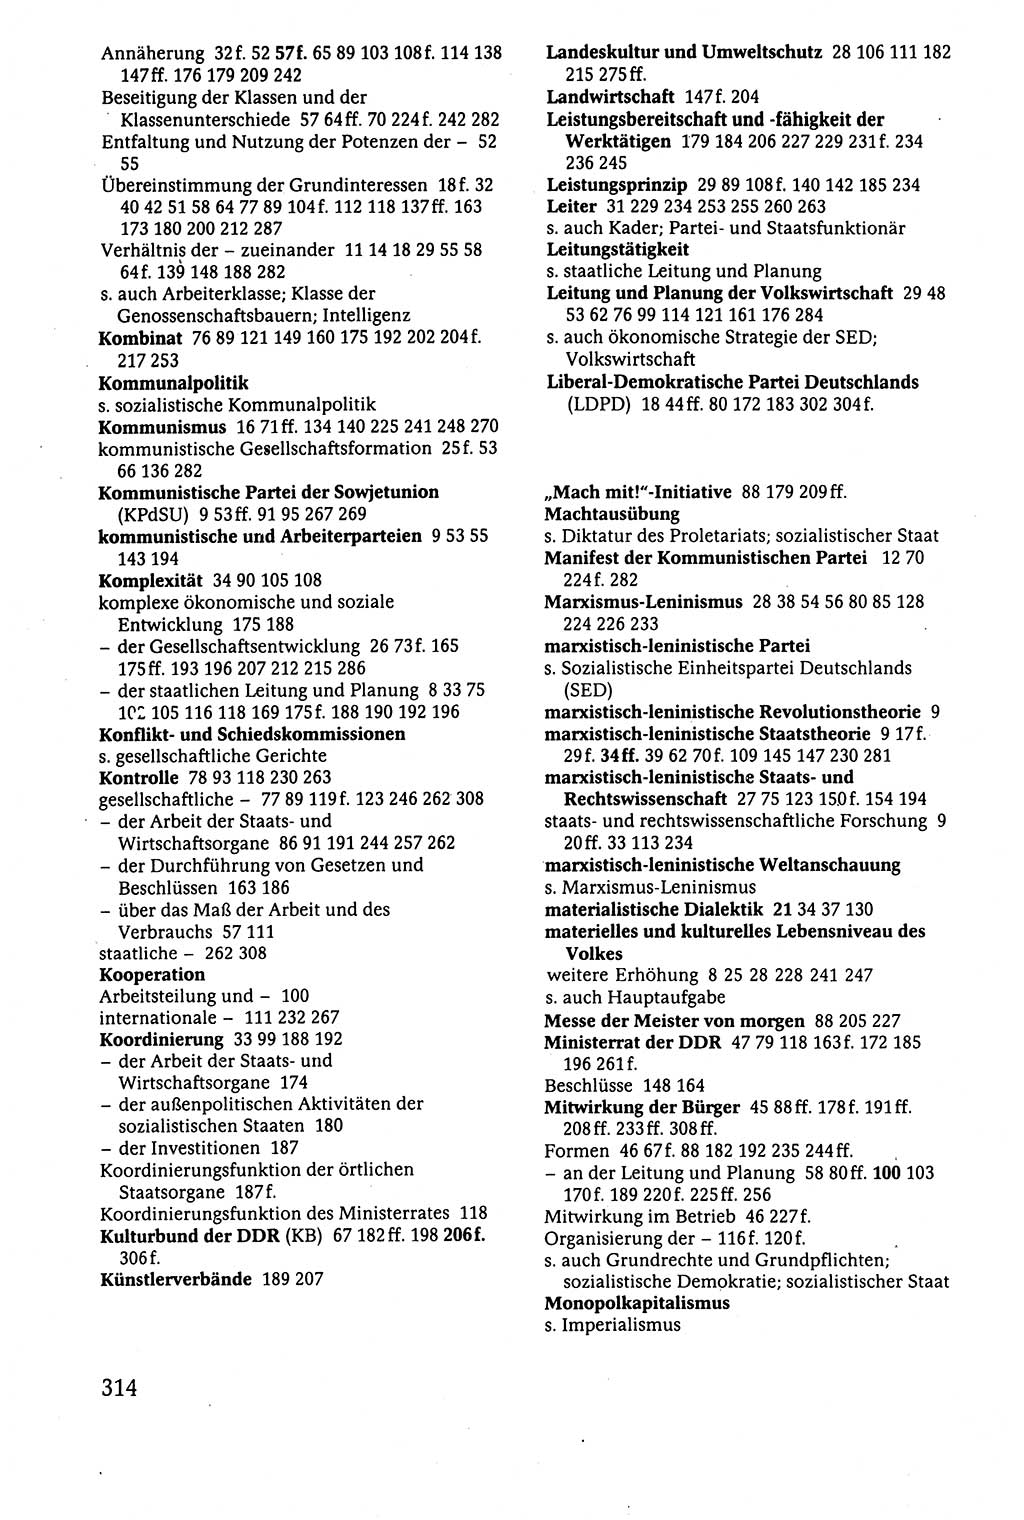 Der Staat im politischen System der DDR (Deutsche Demokratische Republik) 1986, Seite 314 (St. pol. Sys. DDR 1986, S. 314)